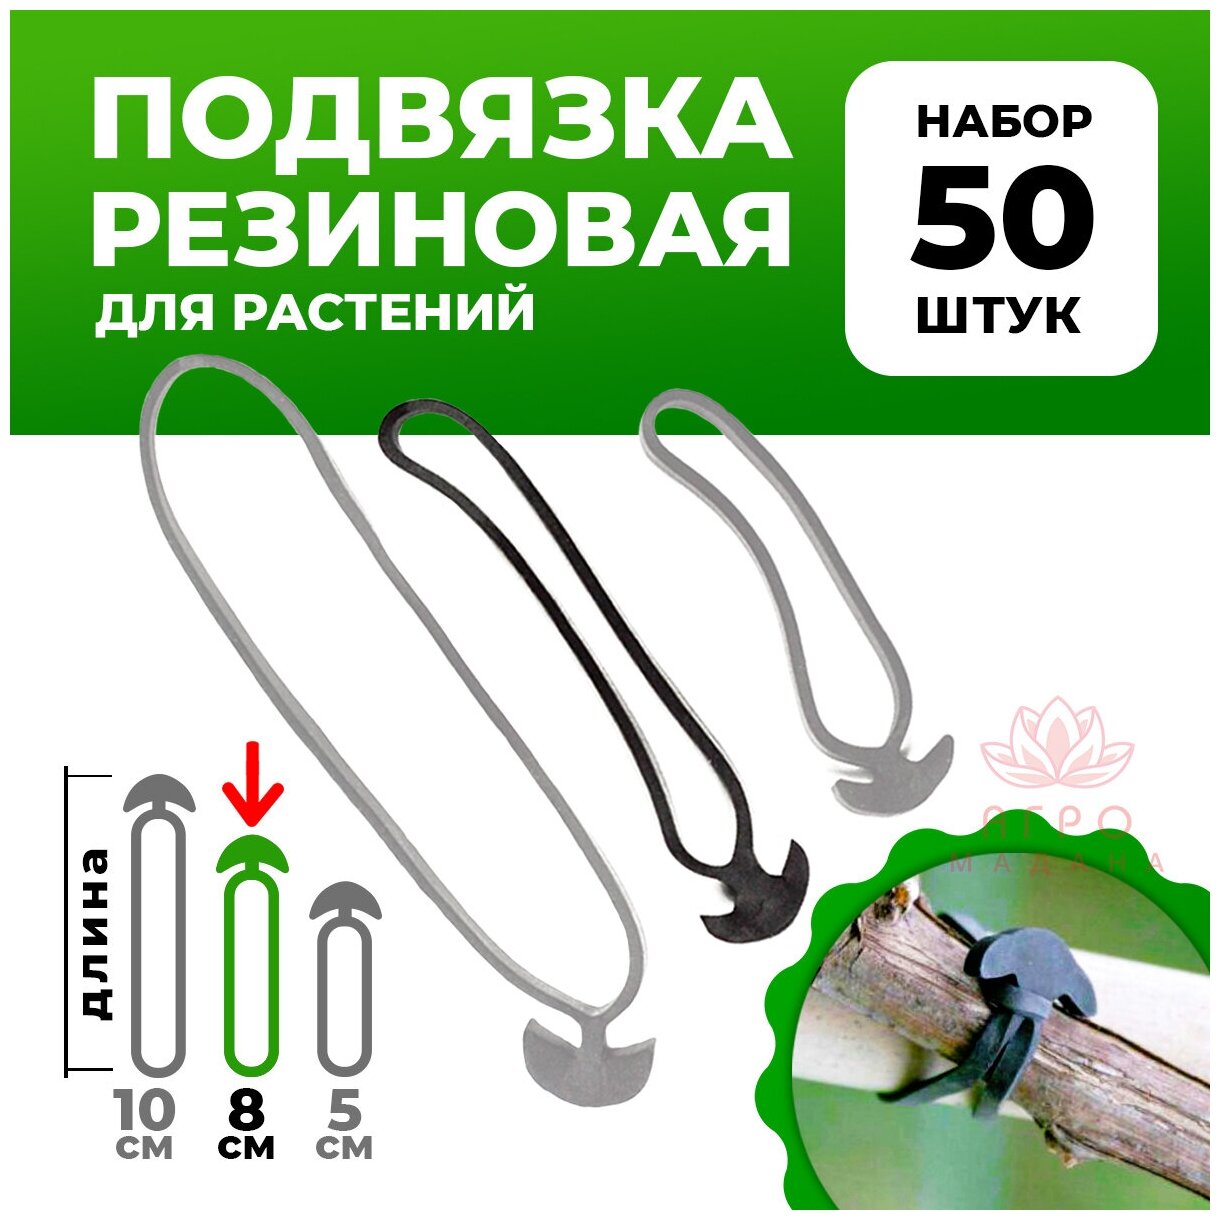 Резиновые крючки для подвязки растений d8см 50 шт / Держатели для растений / Клипсы крючки для подвязки растений - фотография № 1